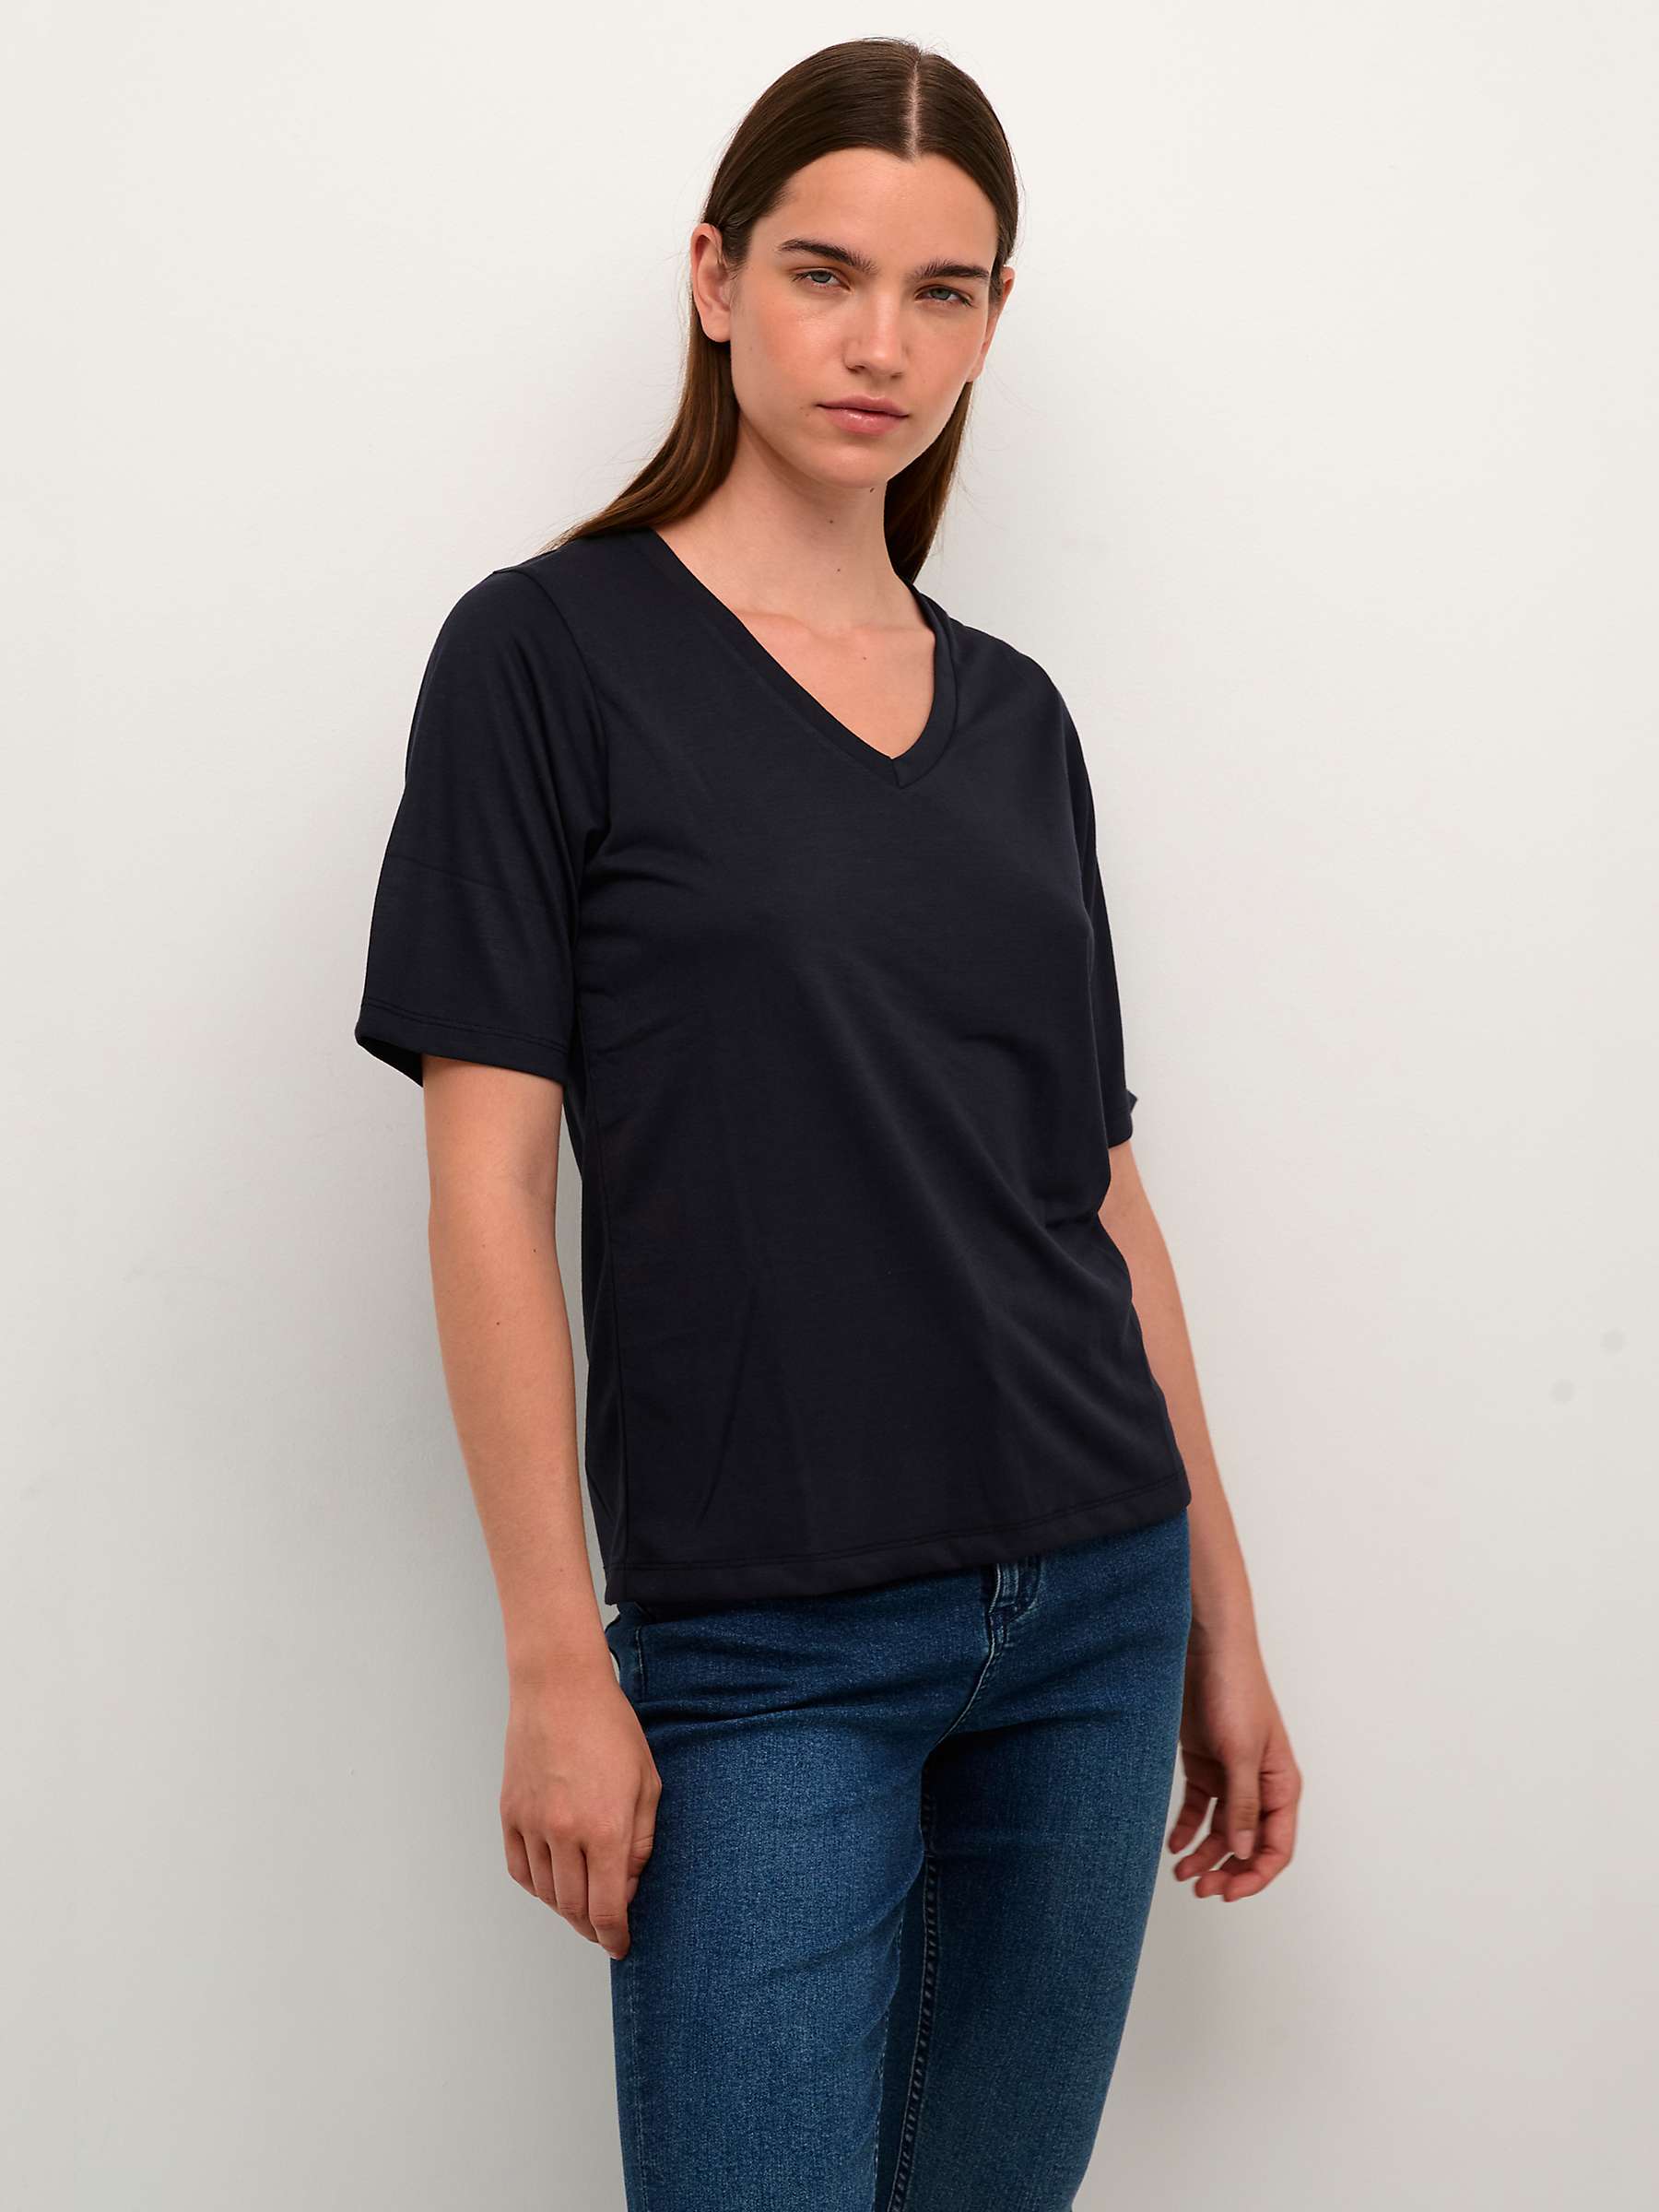 Buy KAFFE Lise Half Sleeve T-Shirt, Washed Black Online at johnlewis.com